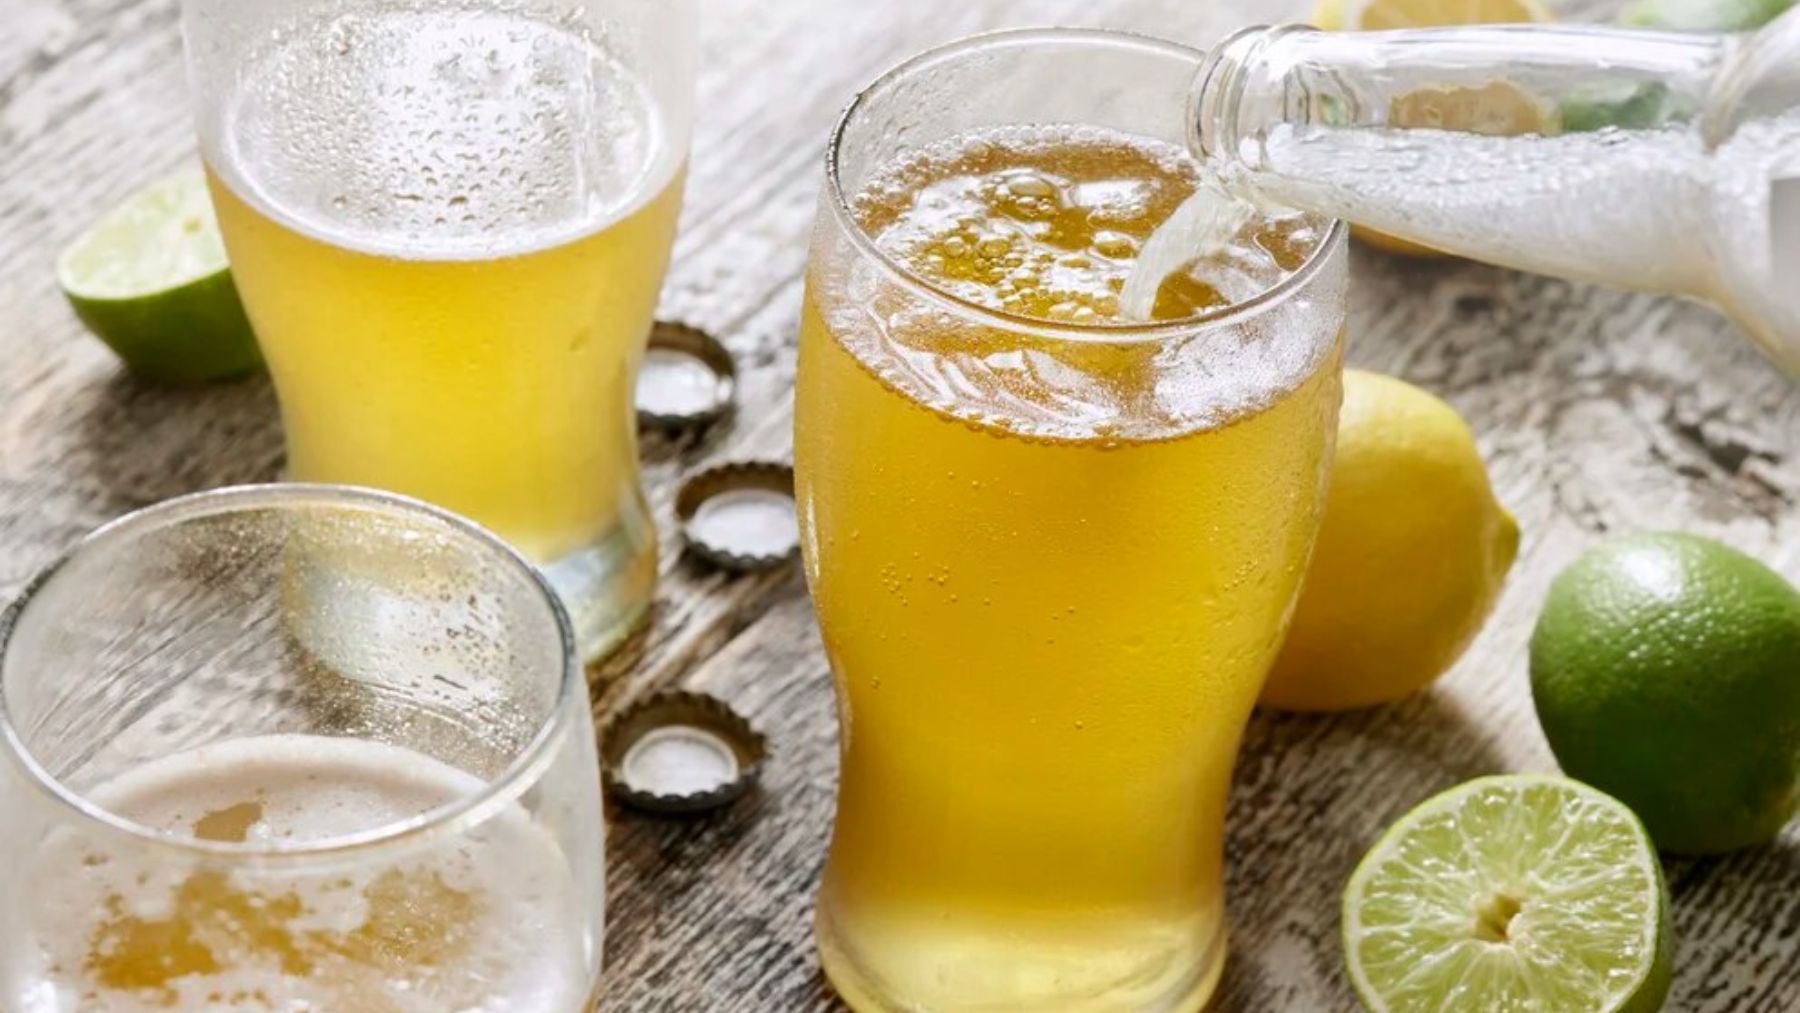 Un experto en nutrición advierte sobre la cerveza con limón